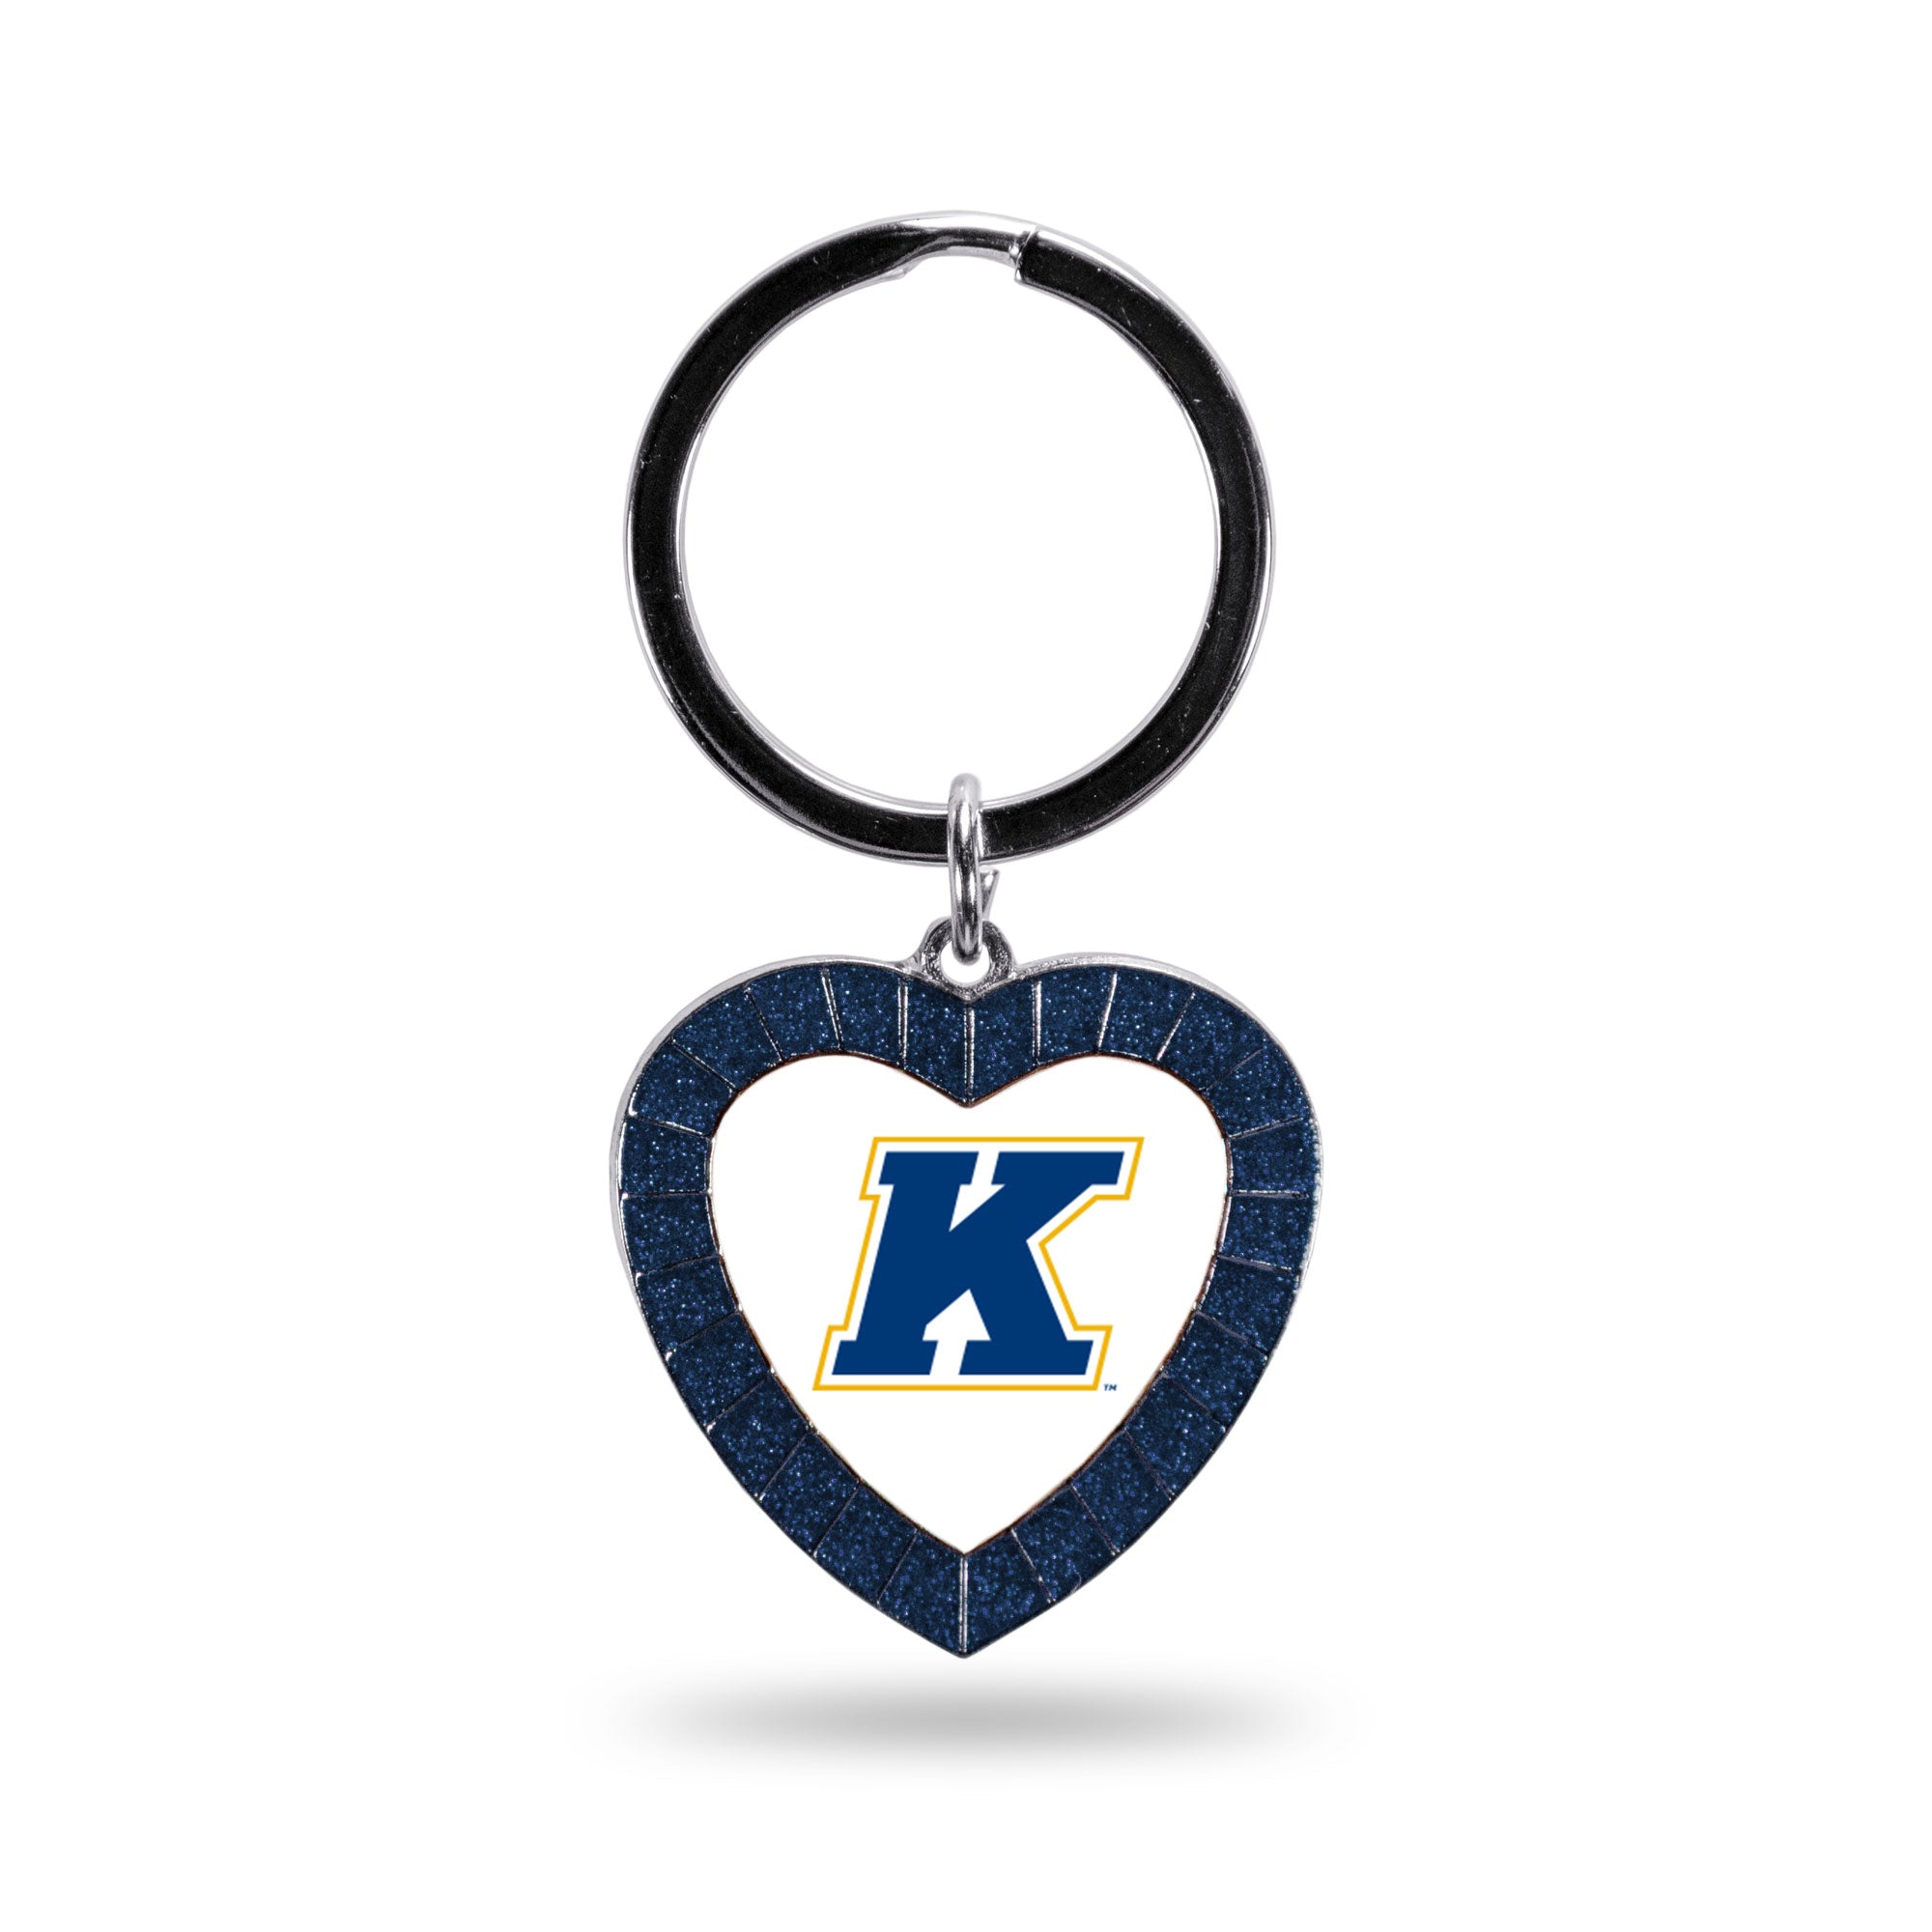 Rhinestone Heart Key Chain